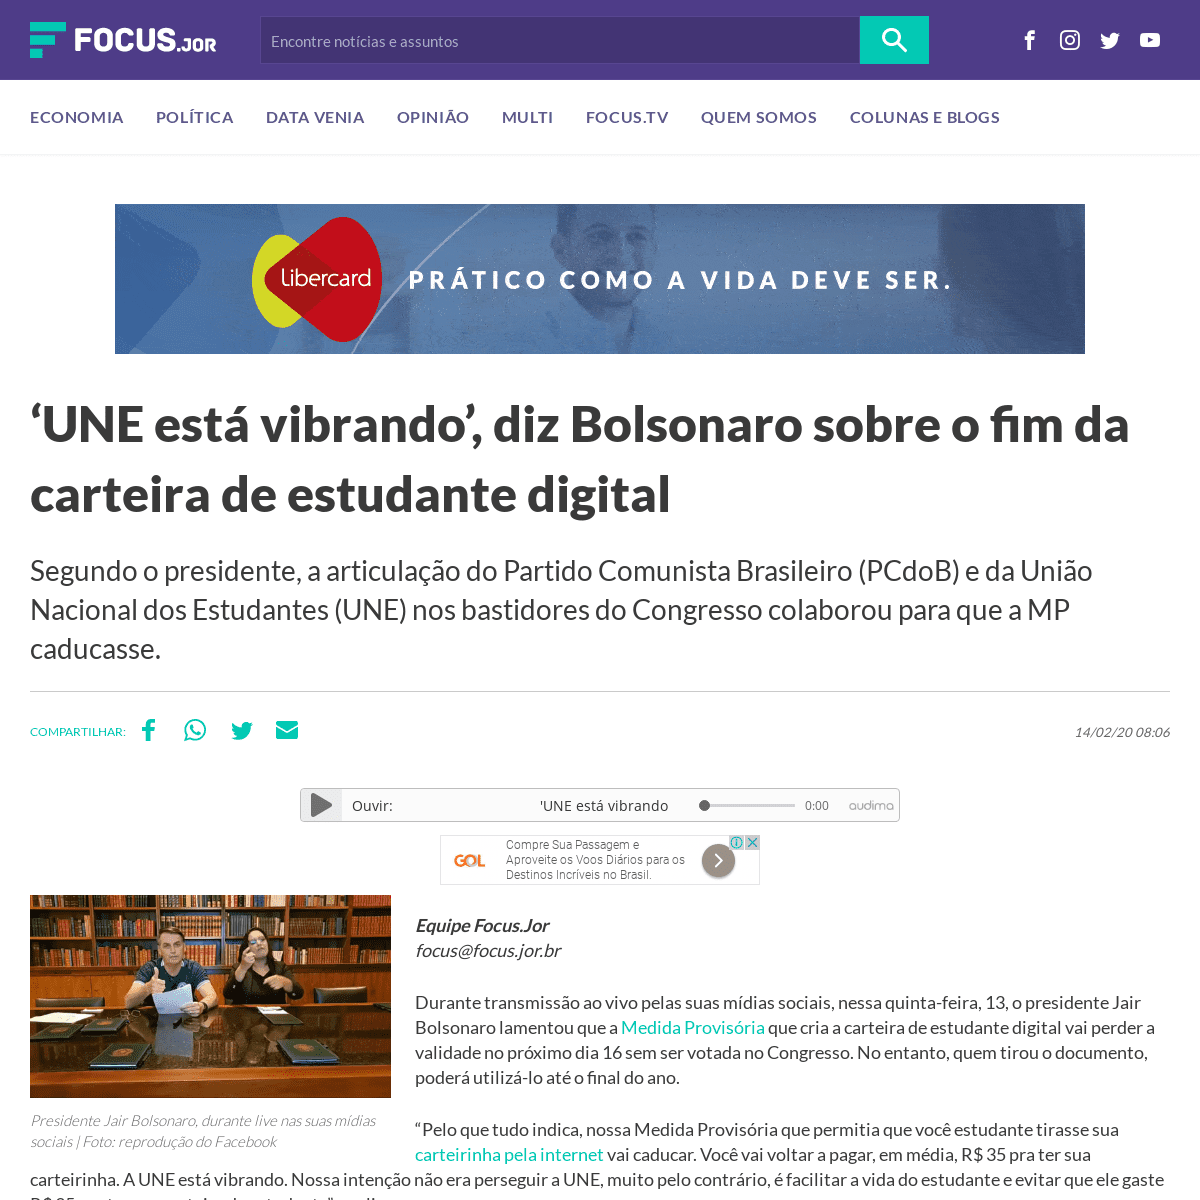 A complete backup of www.focus.jor.br/une-esta-vibrando-diz-bolsonaro-sobre-o-fim-da-carteira-de-estudante-digital/